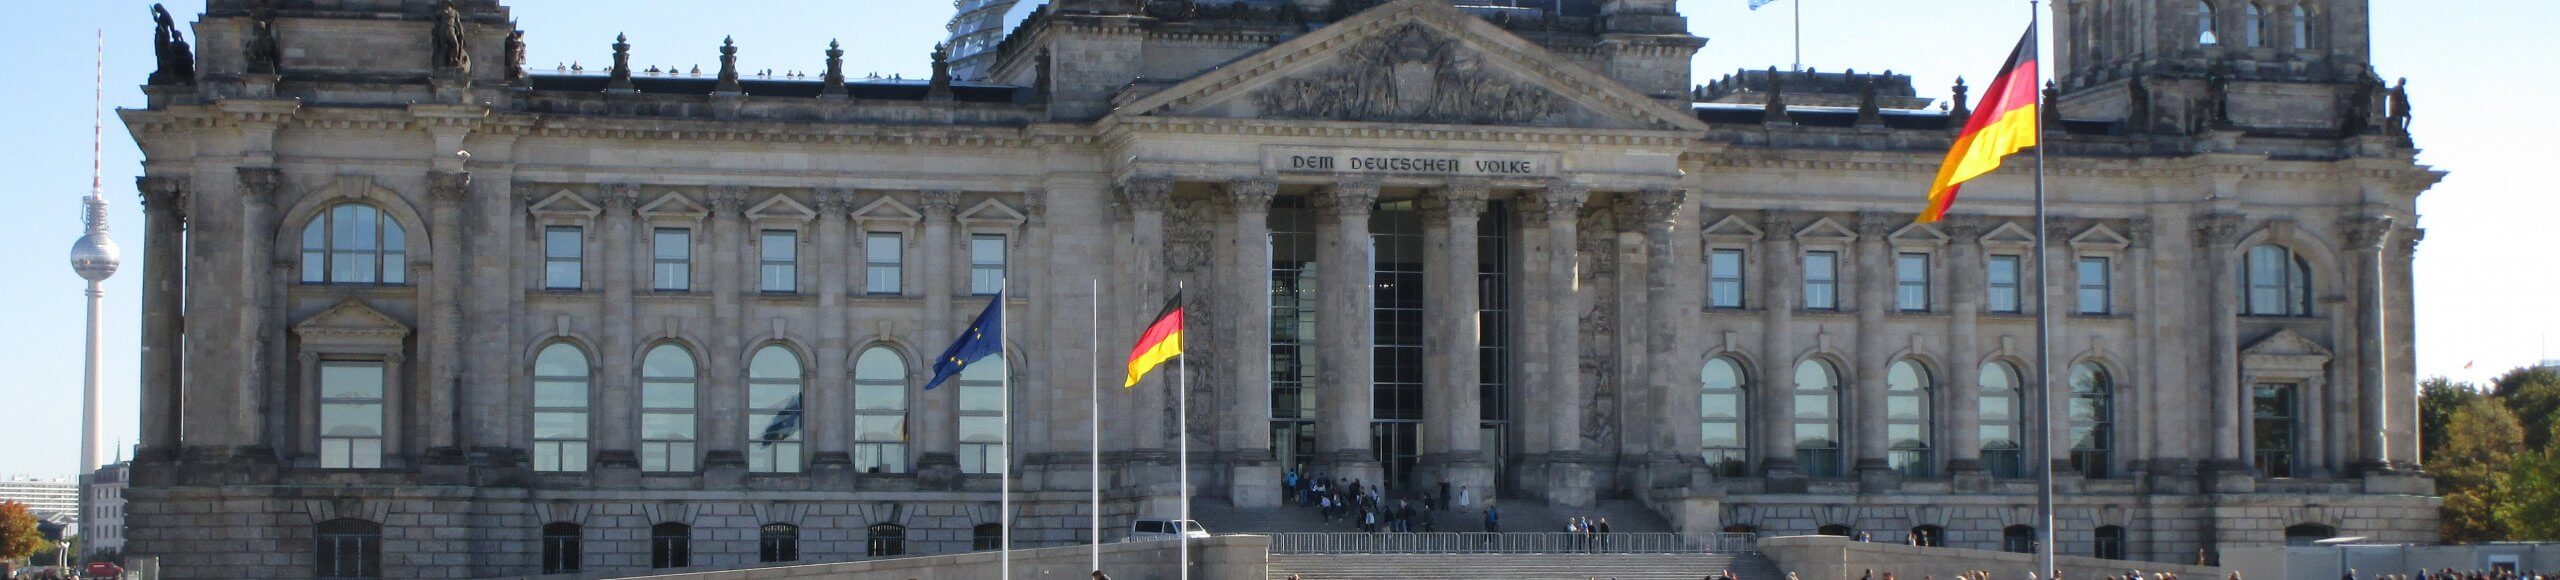 Berlin Bundestag Reichstag